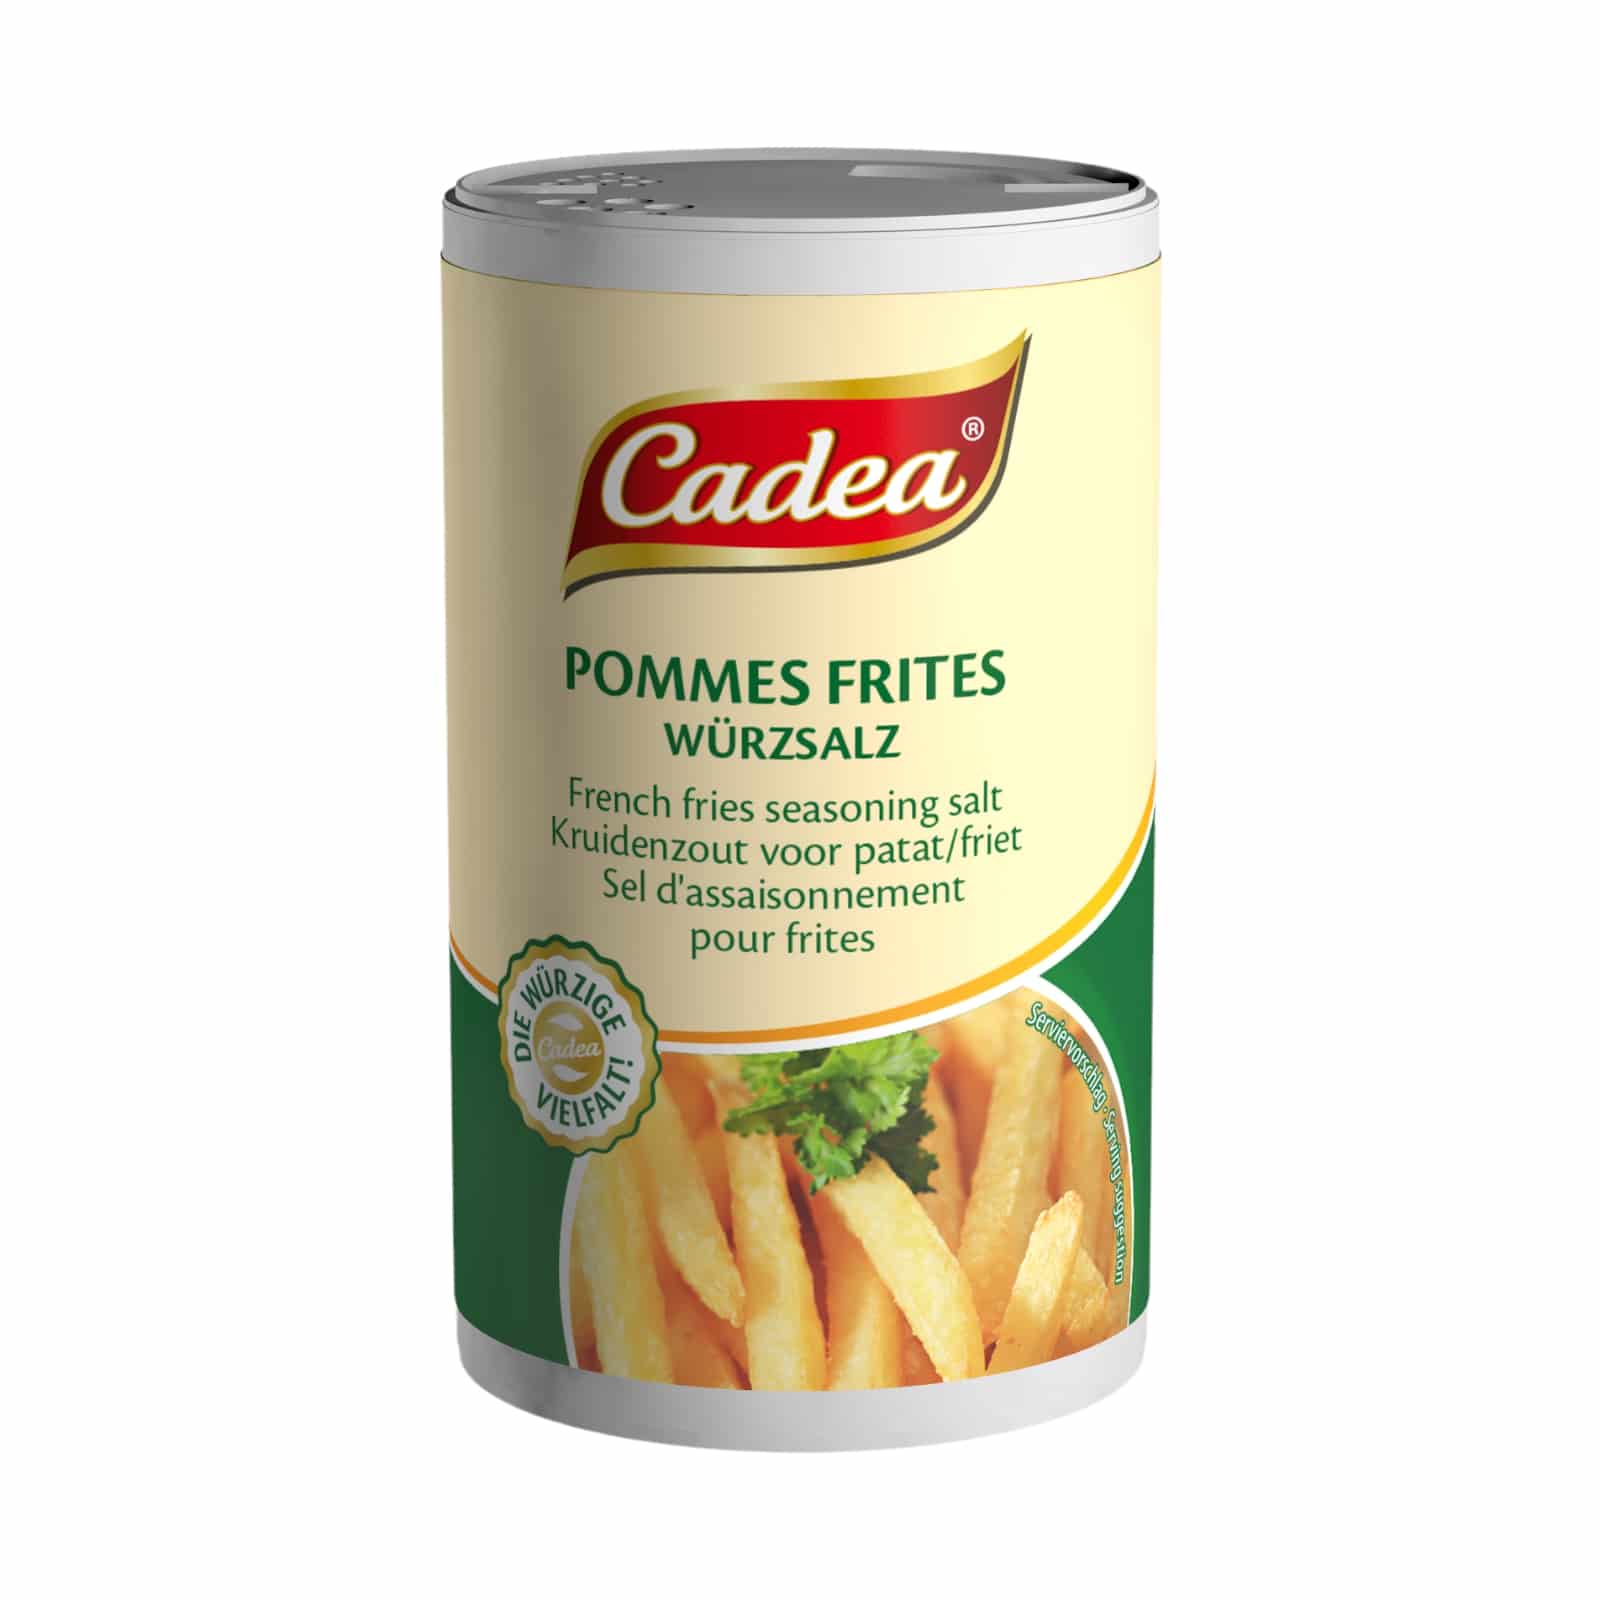 CADEA Pommes frites Salz 150g DS